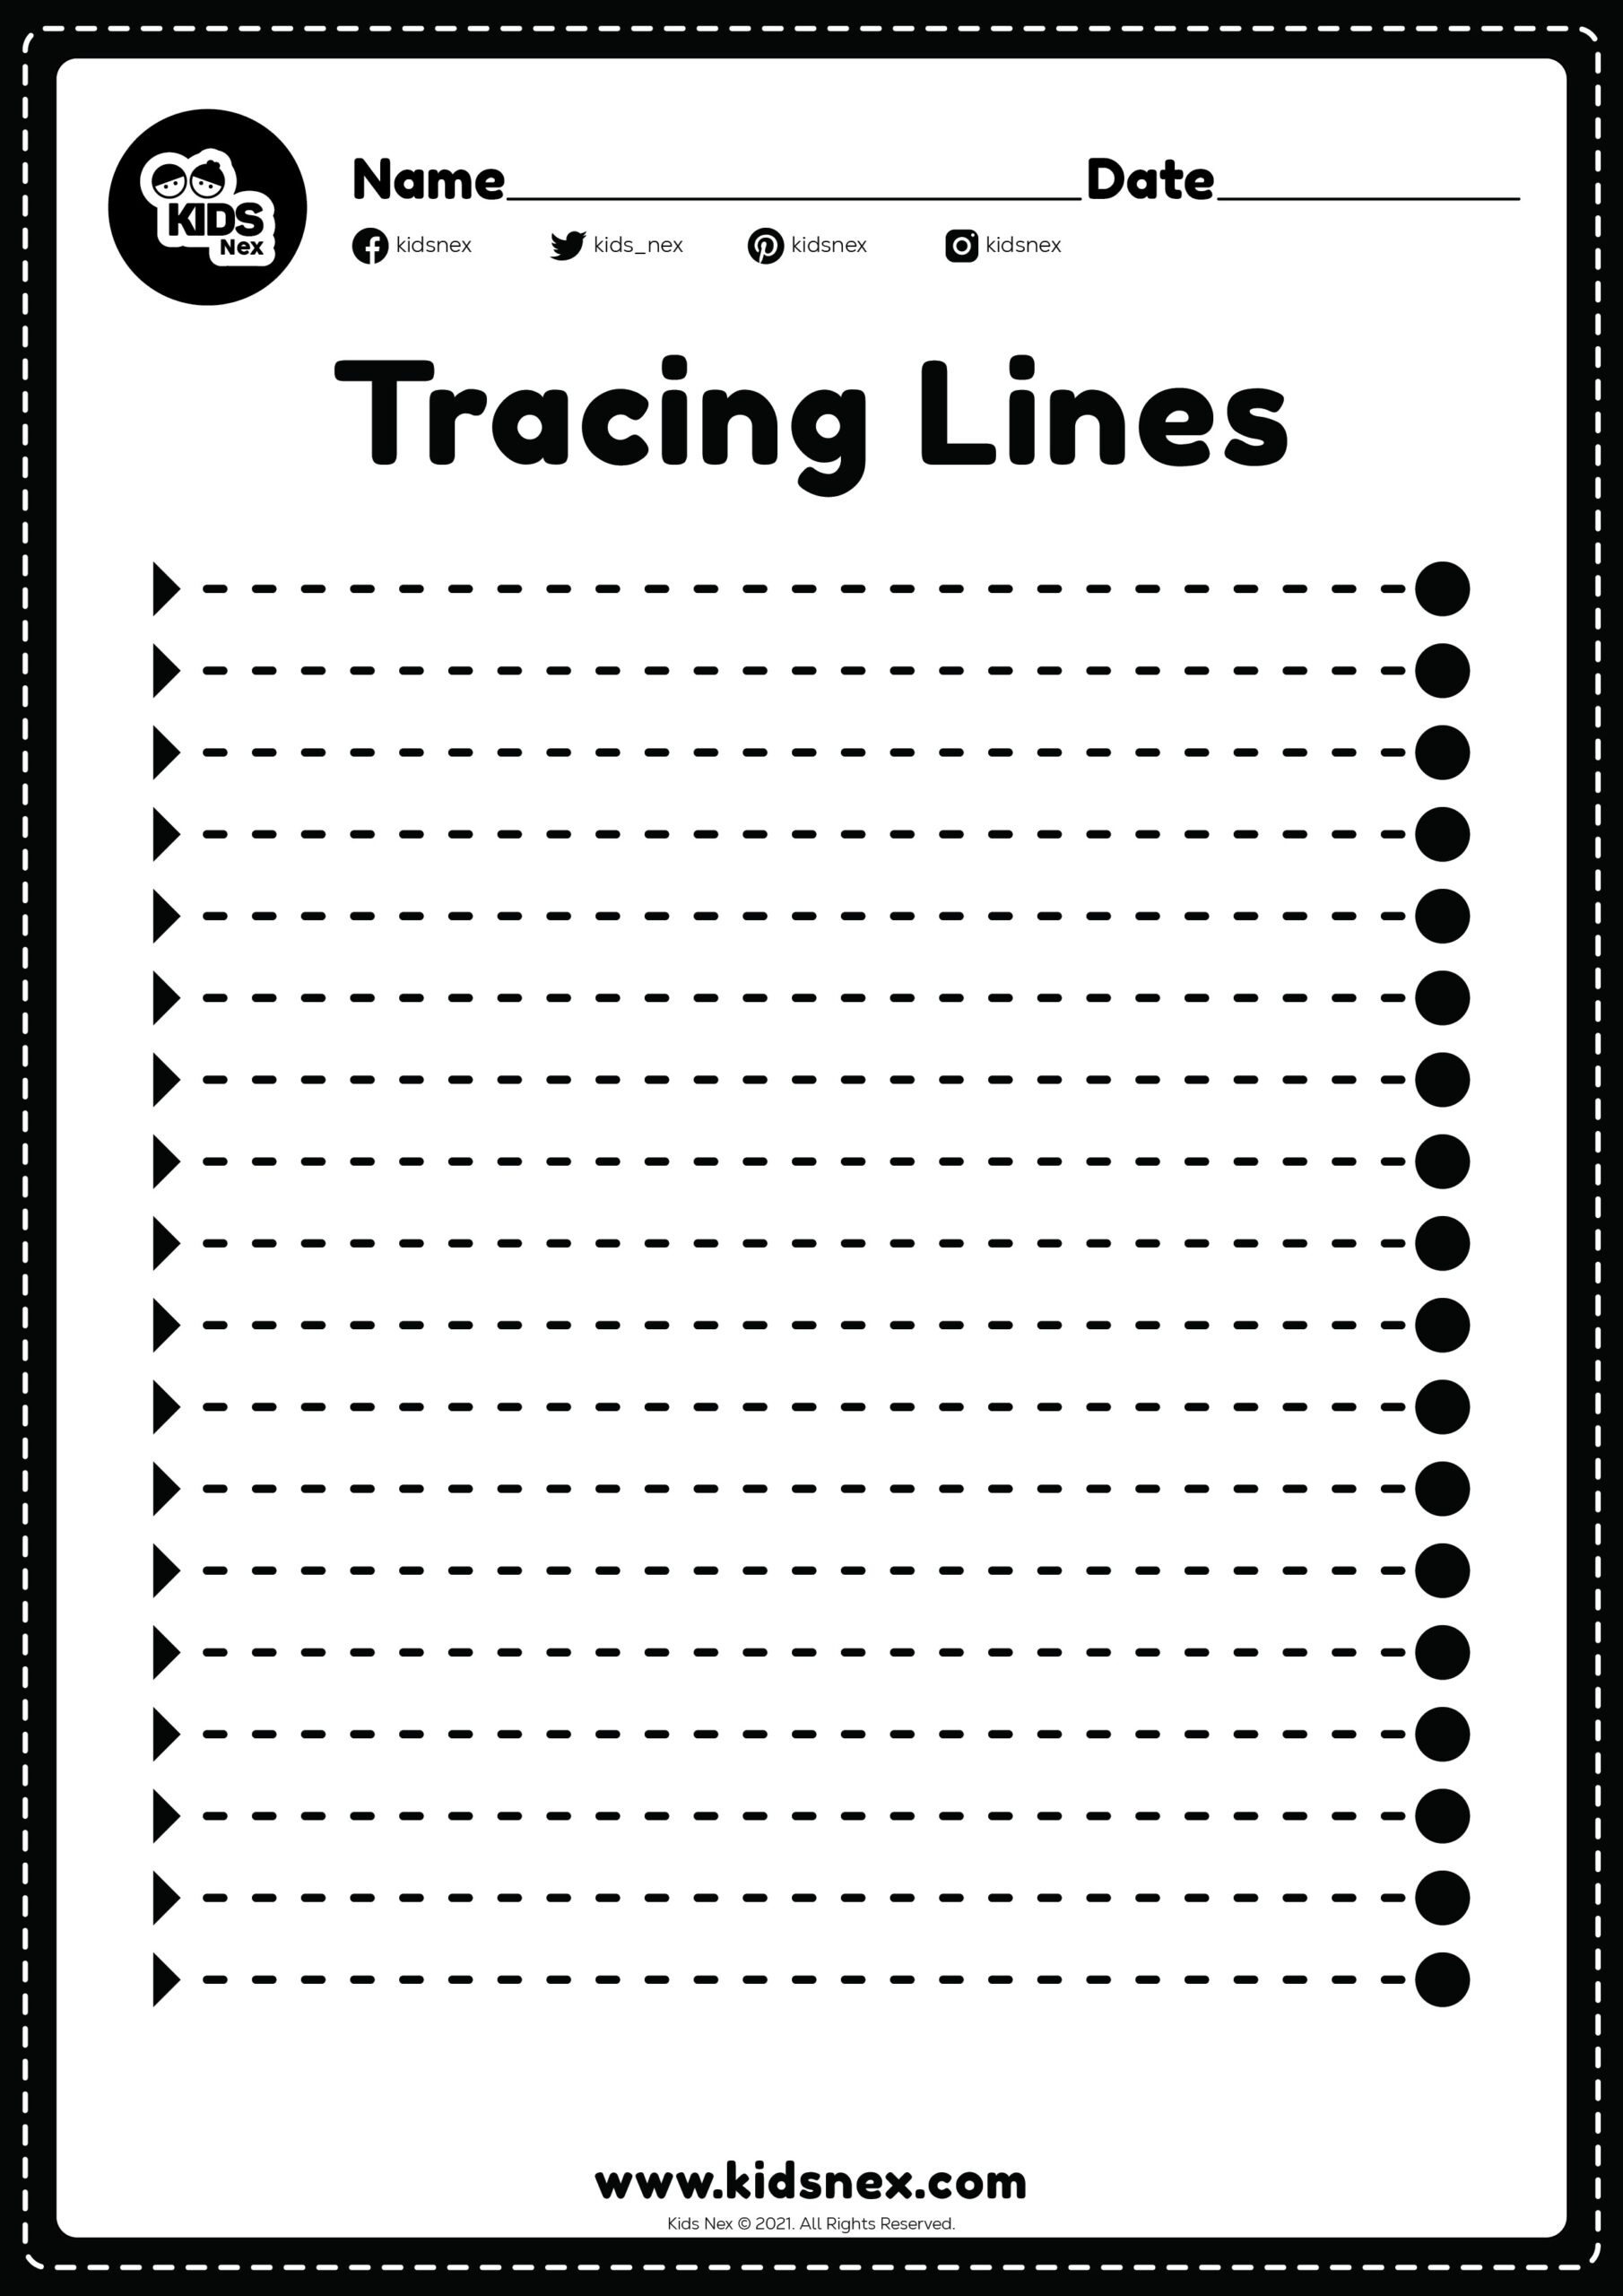 Tracing lines worksheet horizontal trace for kindergarten and preschoolers kids